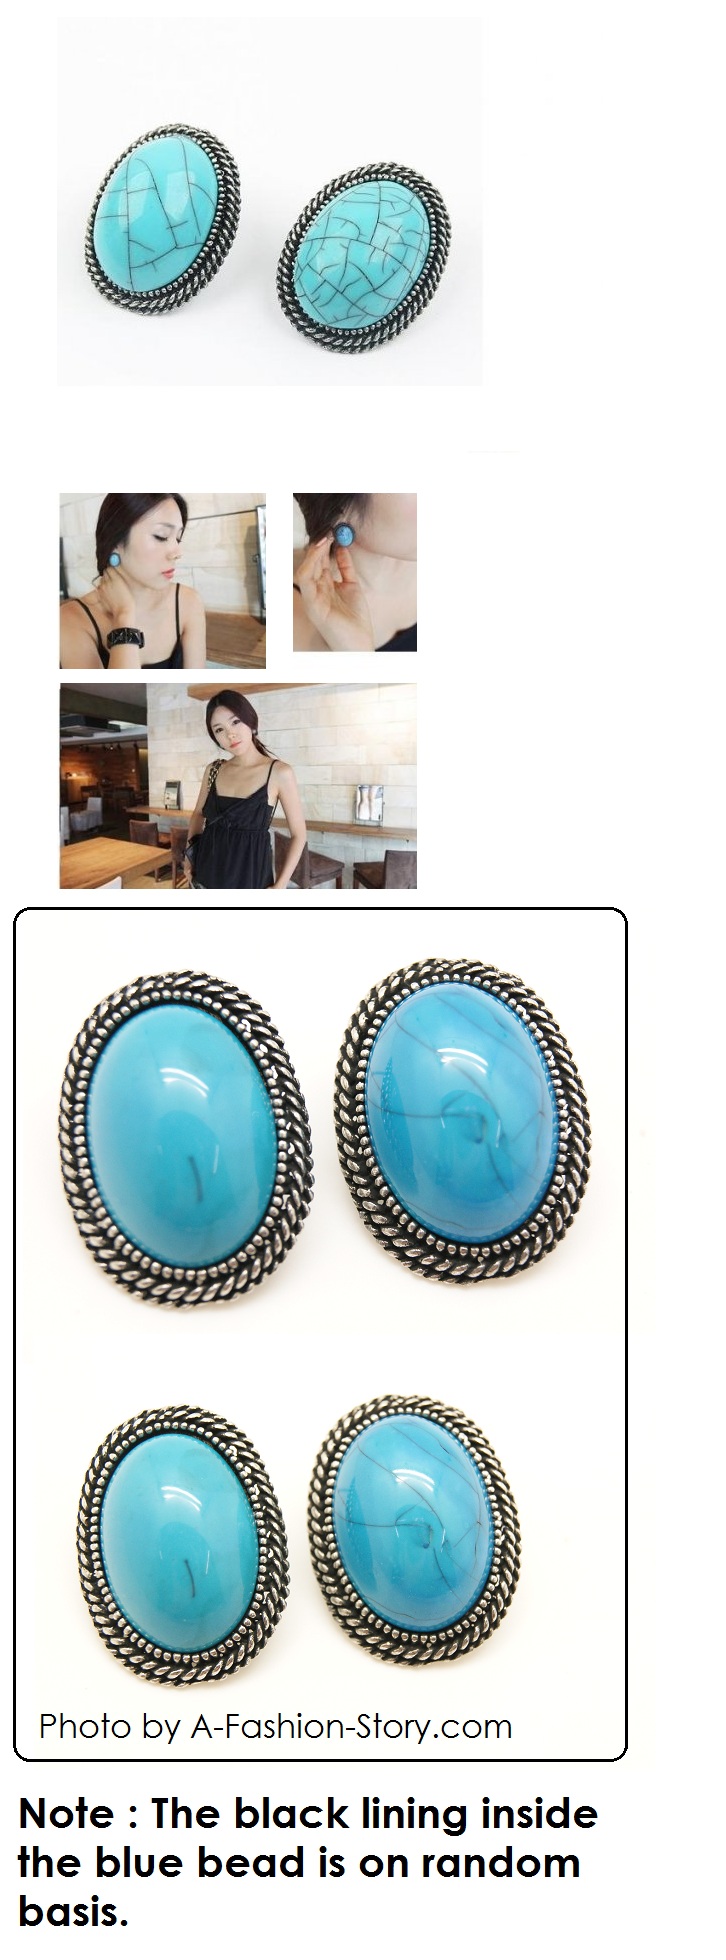 C11032303 P76490 Brunei earrings earstuds online shop blogshop w